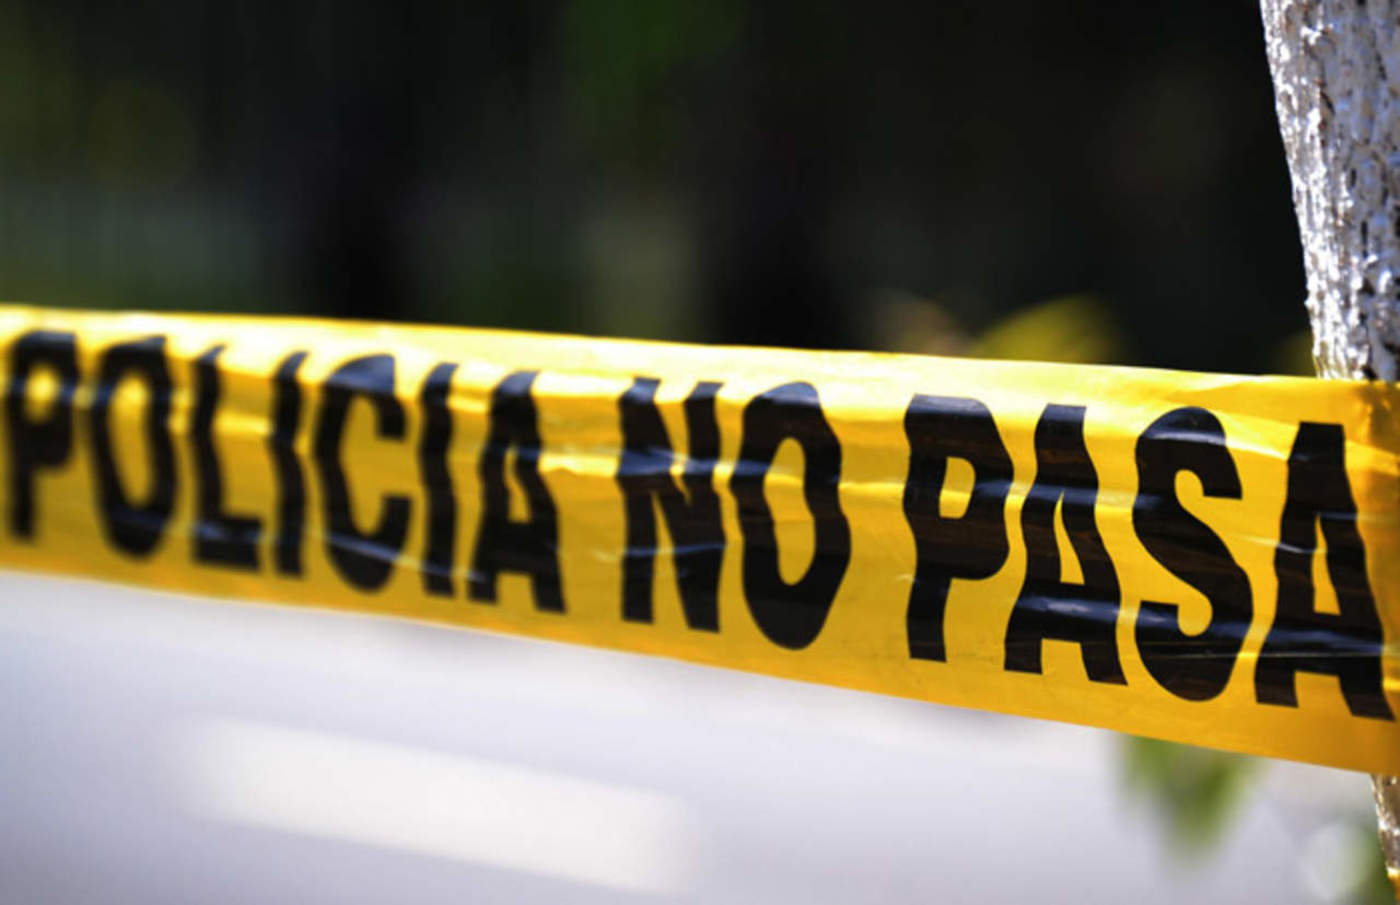 Matan a 4 personas en Culiacán, Sinaloa